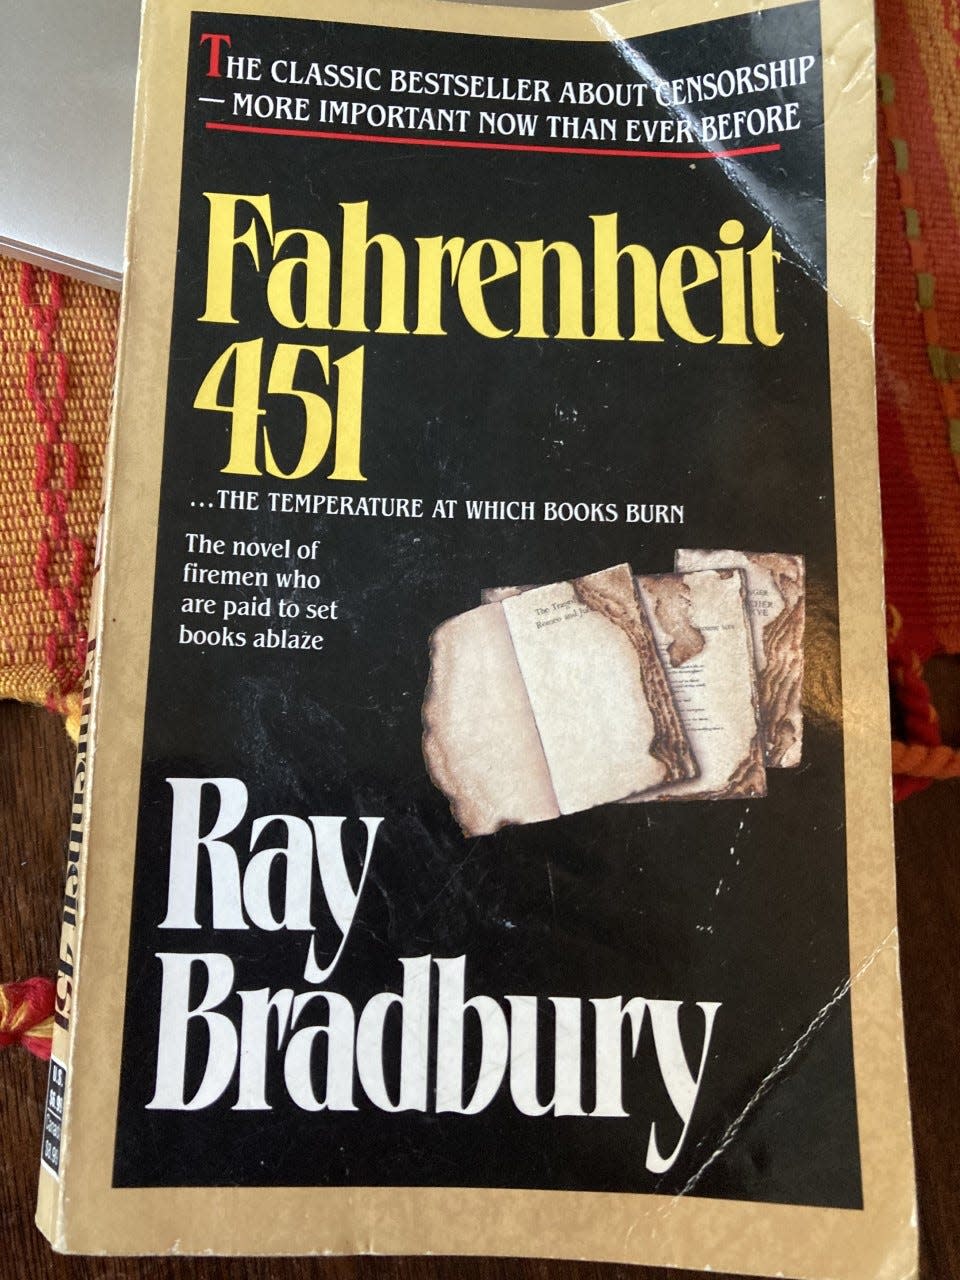 A copy of 'Fahrenheit 451' by Ray Bradbury